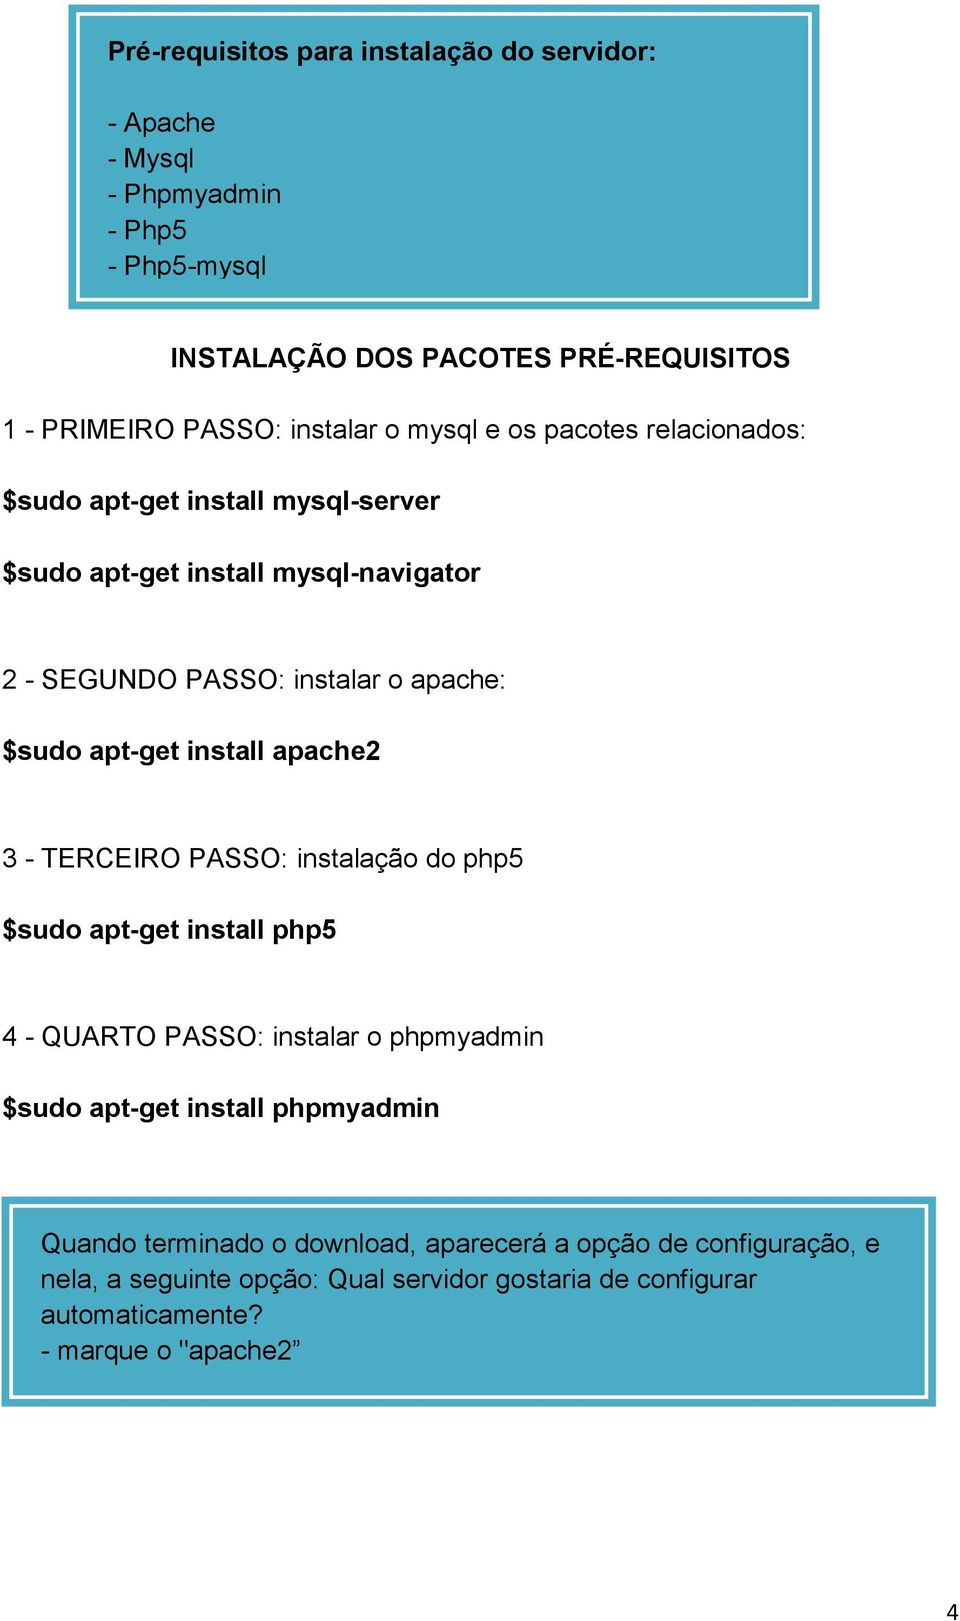 install apache2 3 - TERCEIRO PASSO: instalação do php5 $sudo apt-get install php5 4 - QUARTO PASSO: instalar o phpmyadmin $sudo apt-get install phpmyadmin